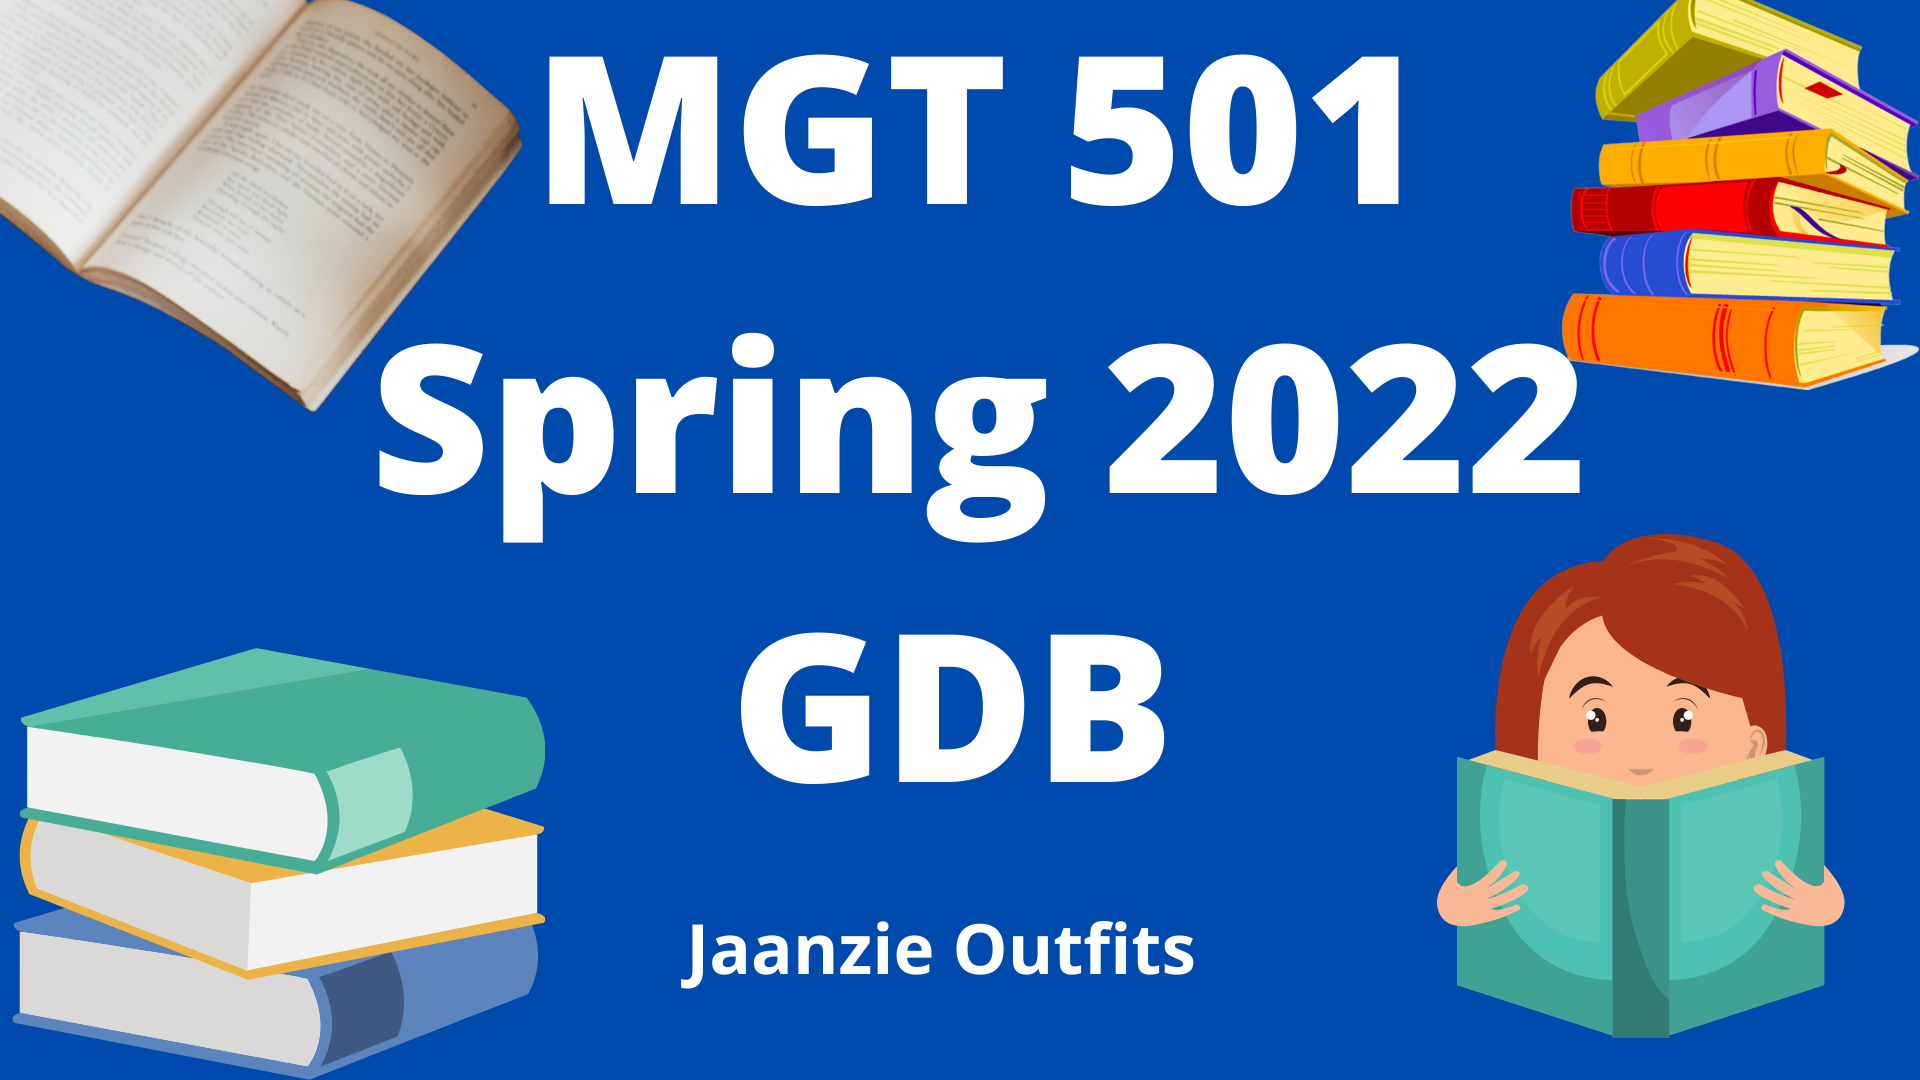 MGT 501 Spring 2022 GDB